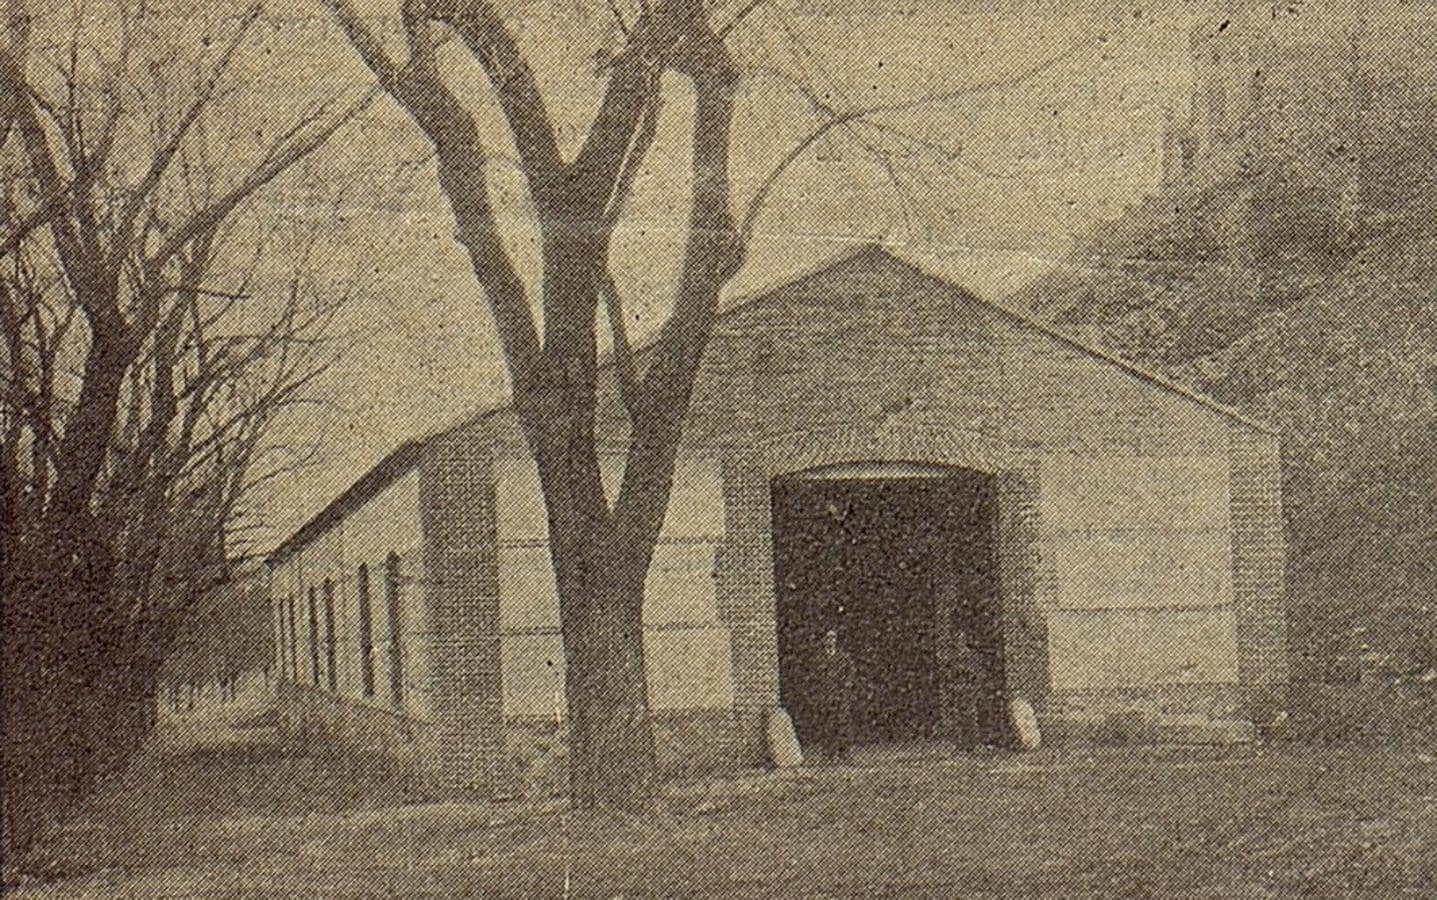 Garaje de la empresa Alegre (ya desaparecido) en el paseo de Recaredo junto a la fuente Salobre. El Castellano, 1925. Archivo Municipal de Toled. 